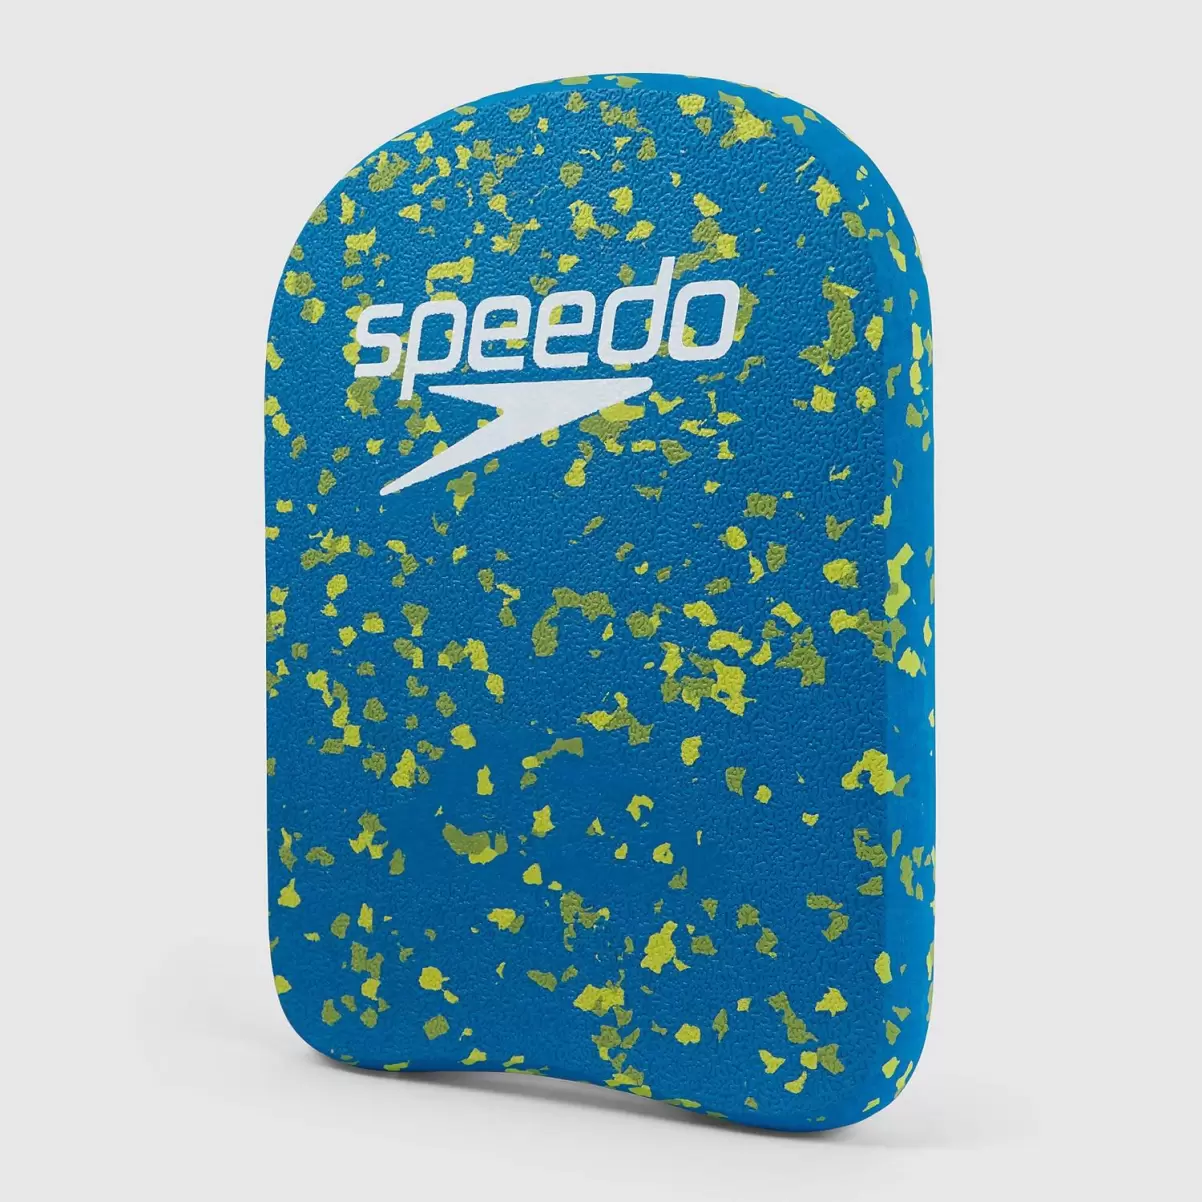 Speedo Damen Bloom Kickboard Blau/Grün Schwimm Accessoires - 3